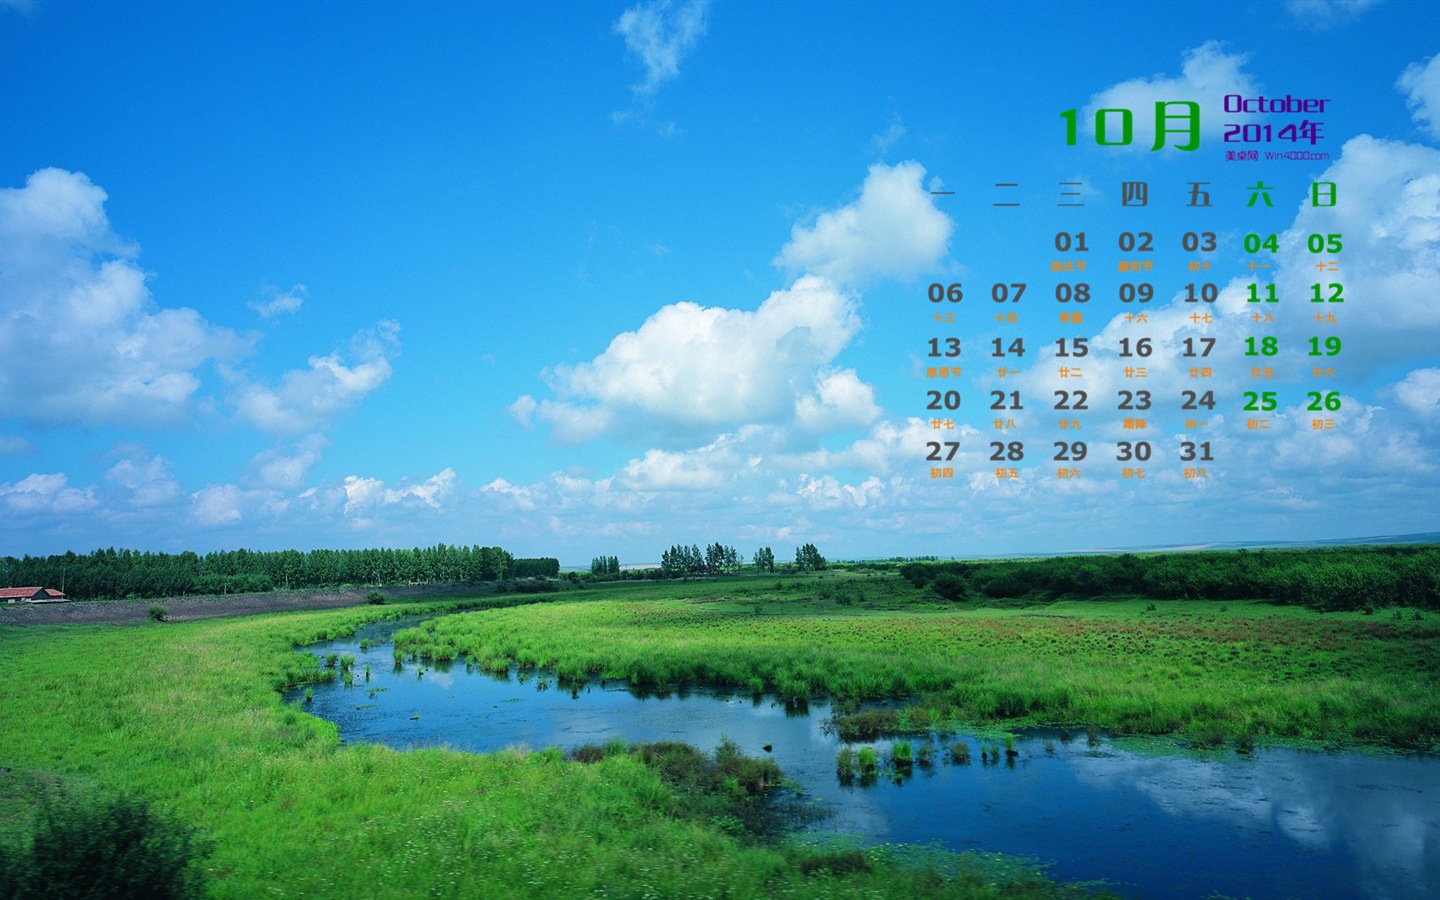 10 2014 wallpaper Calendario (1) #4 - 1440x900